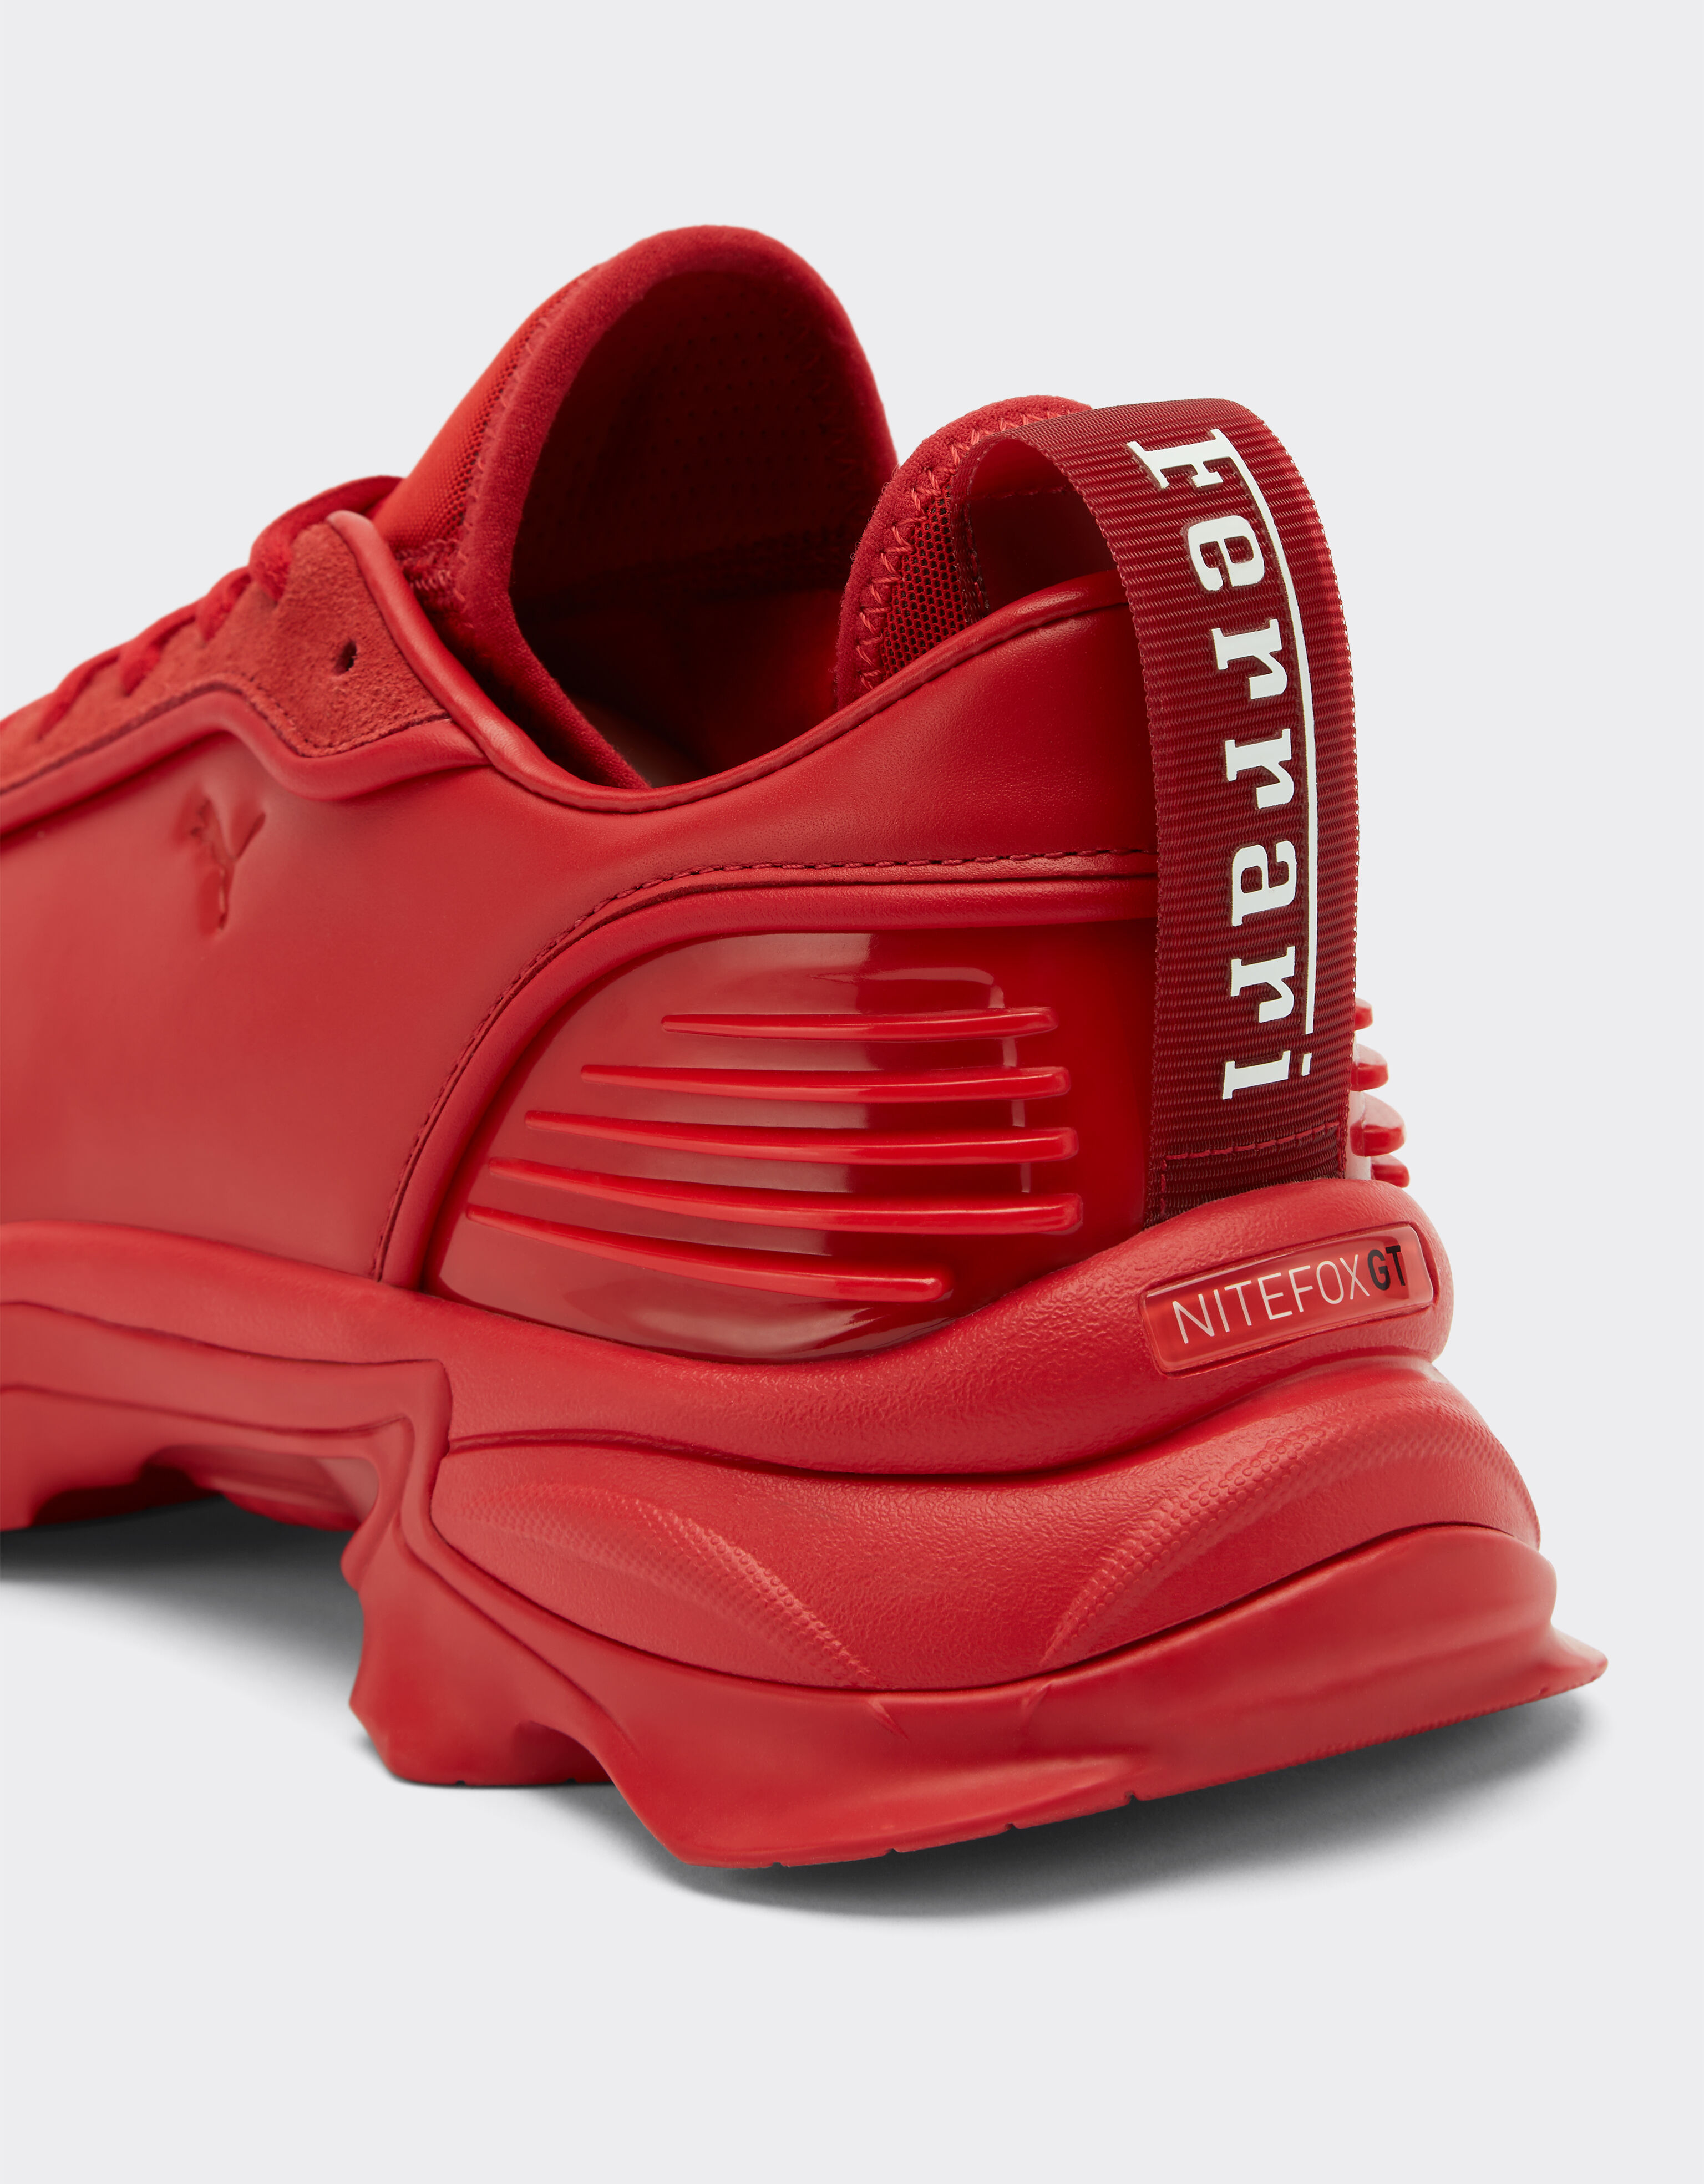 Ferrari Sneakers Nitefox Puma für Ferrari in Rosso Dino/Ferrari exklusiv Rot F0709f